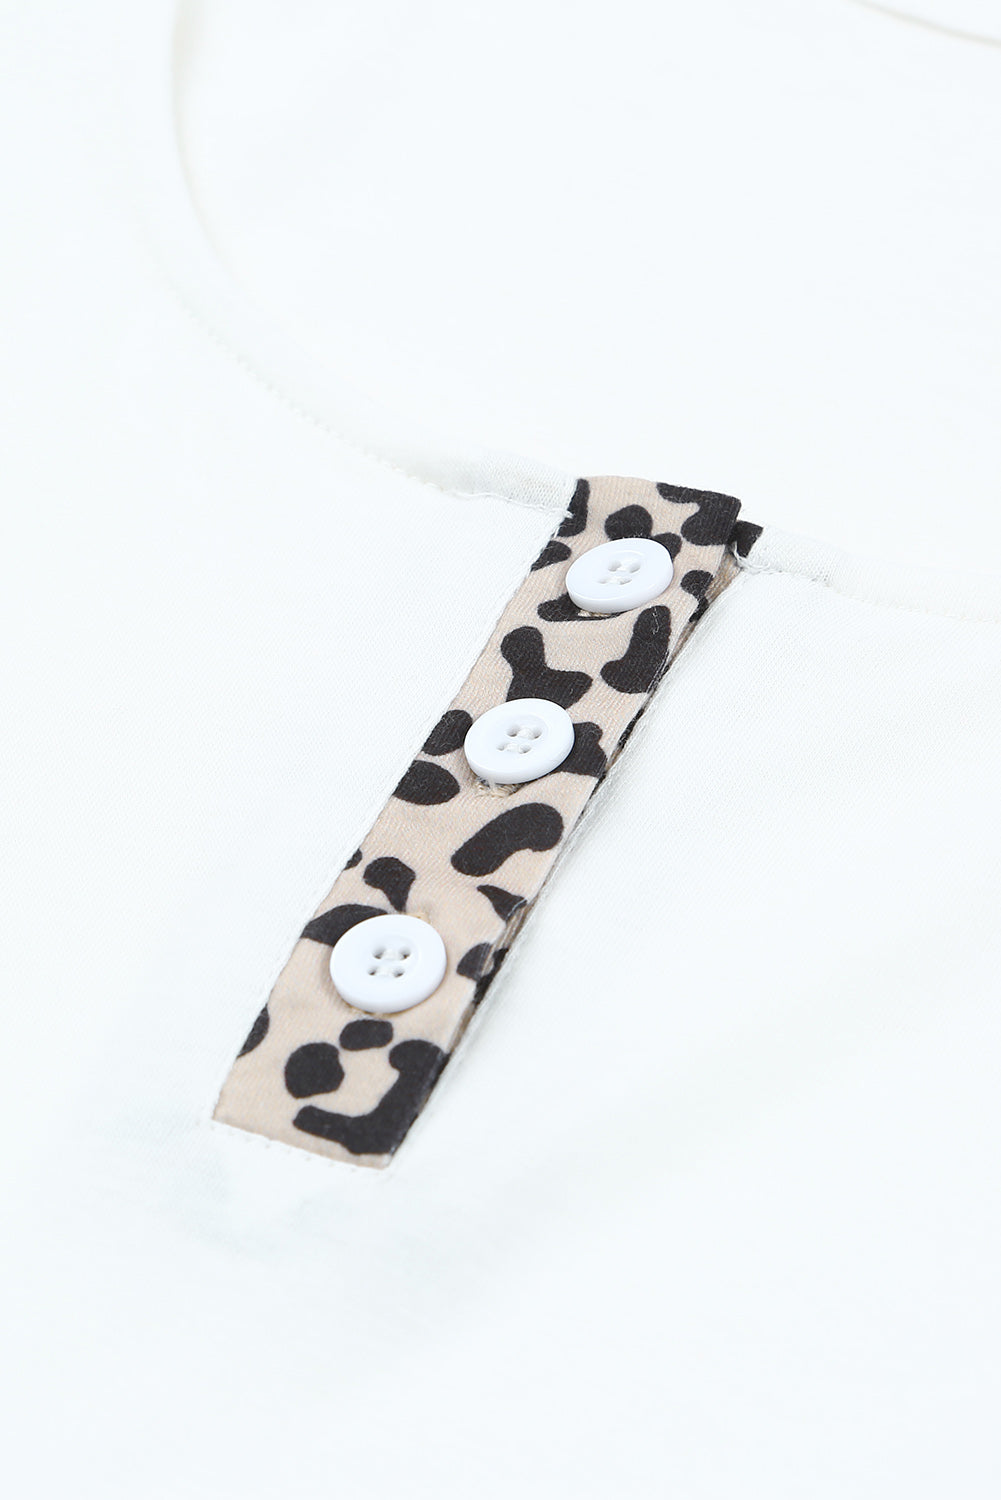 White Cheetah Print Sleeveless Button Front Tank Top